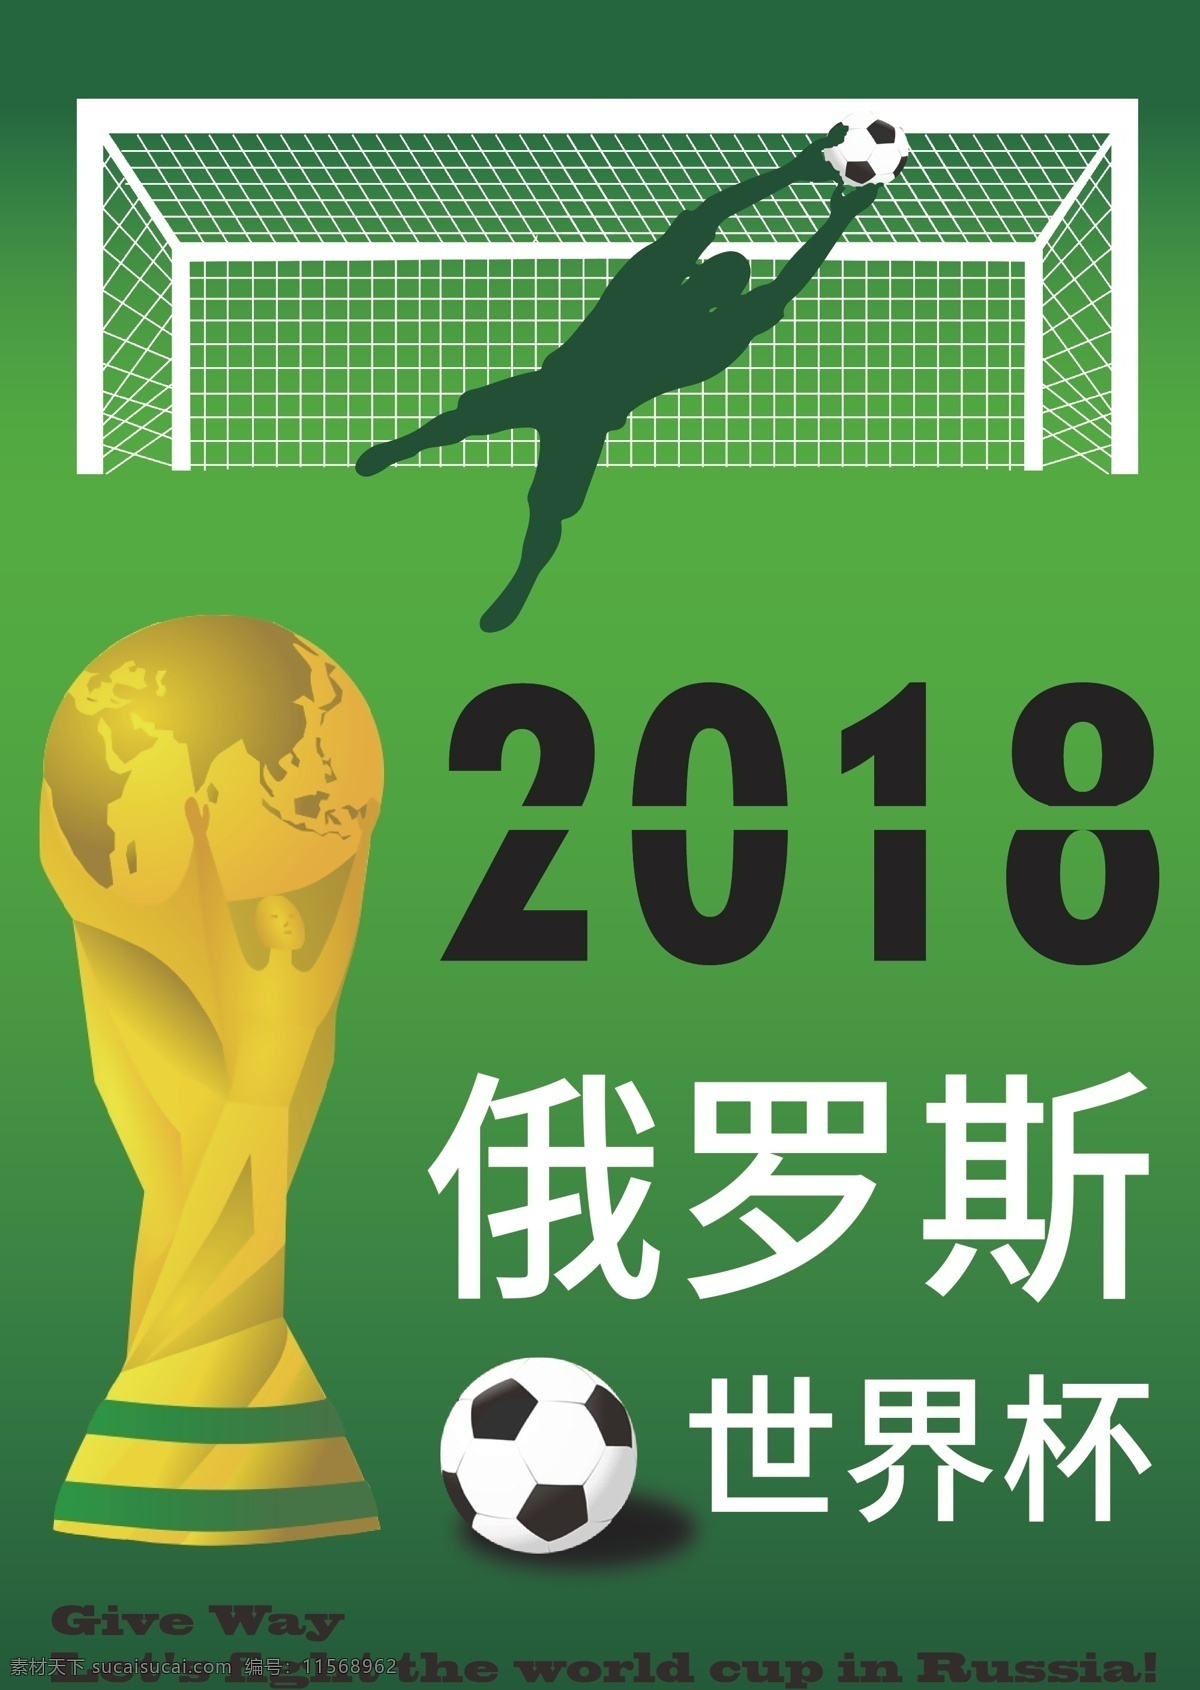 足球 世界杯 海报 世界杯素材 世界杯海报 世界杯背景 足球世界杯 俄罗斯世界杯 2018 世界杯奖杯 背景